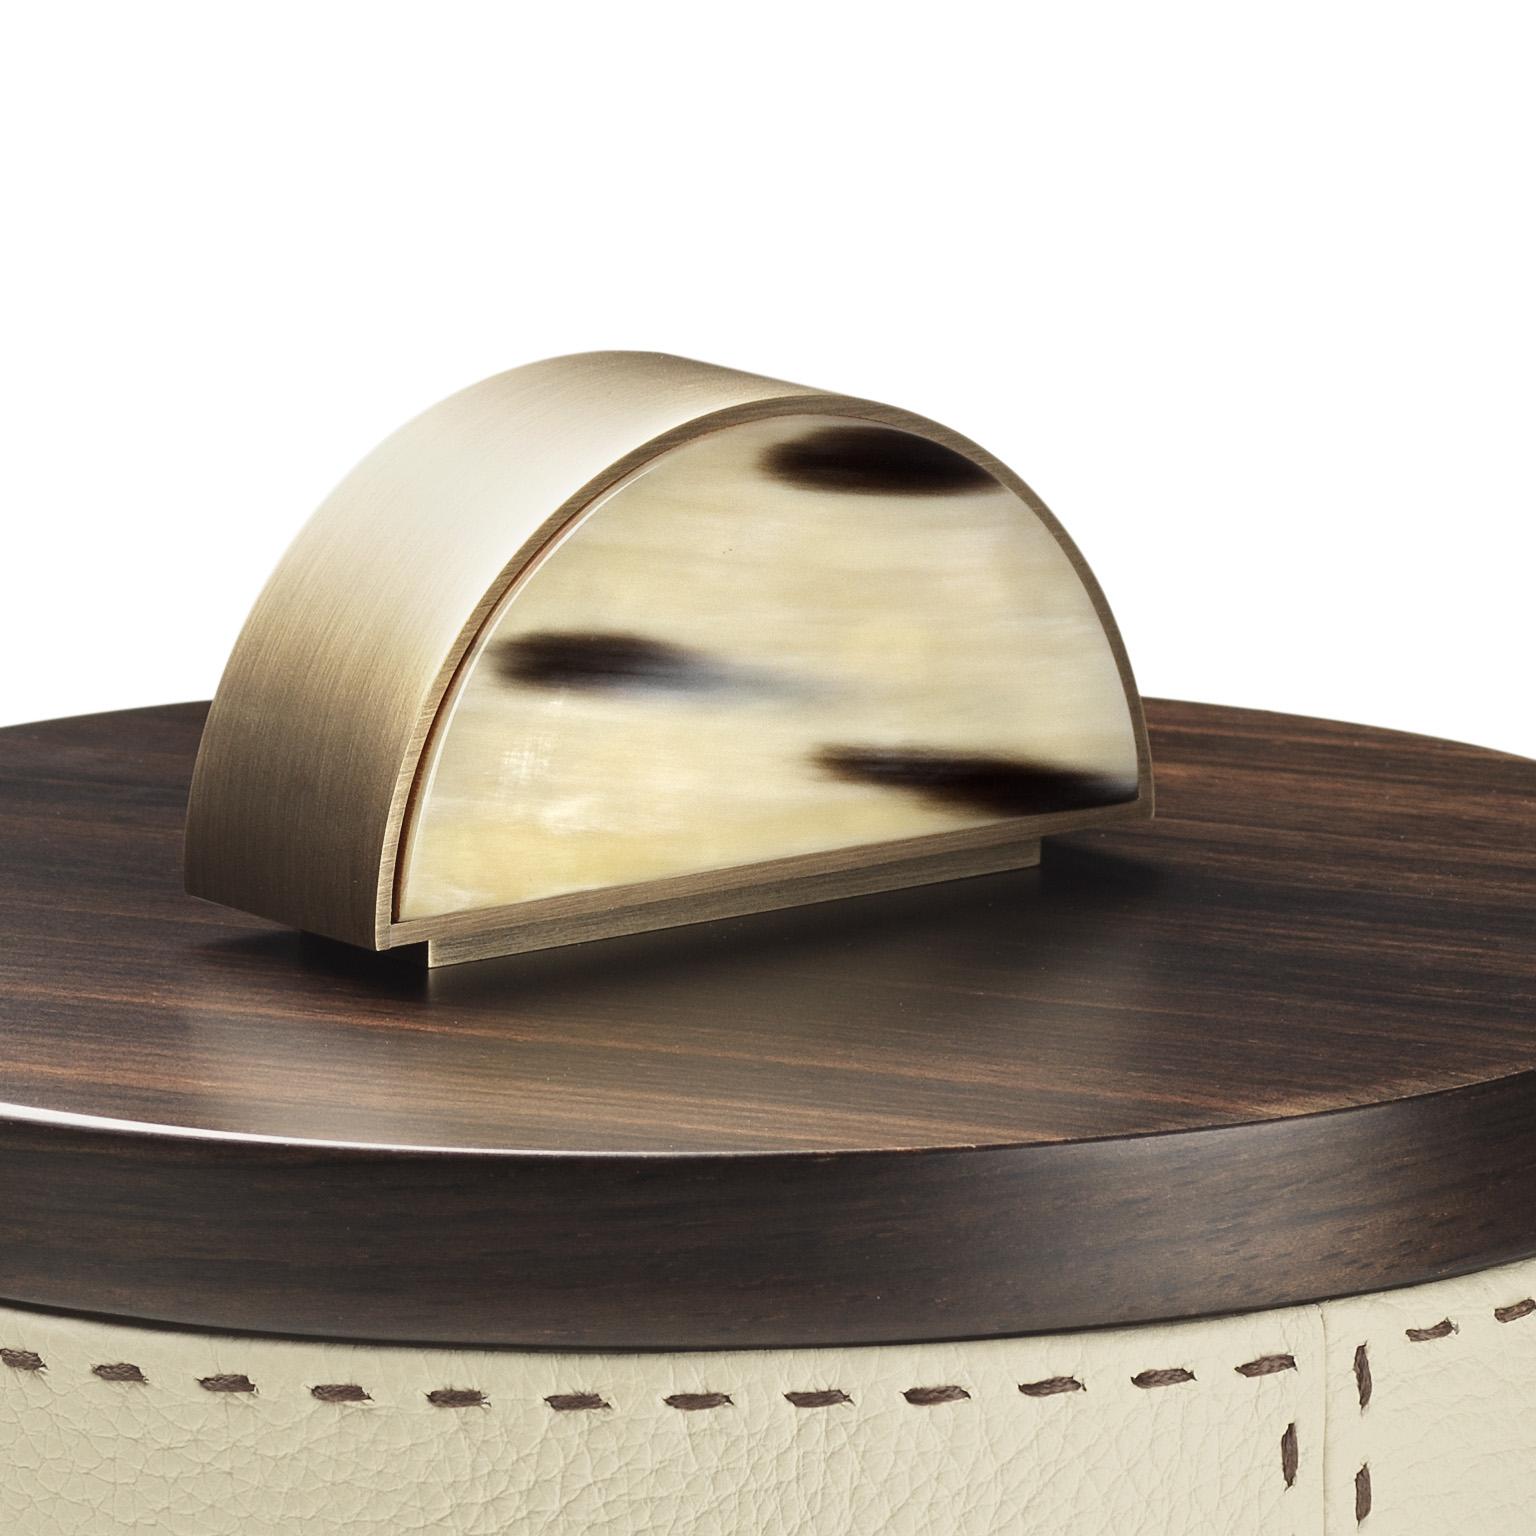 Agneta Round Box in Pebbled Leather with Handle in Corno Italiano, Mod. 4482 In New Condition For Sale In Recanati, Macerata